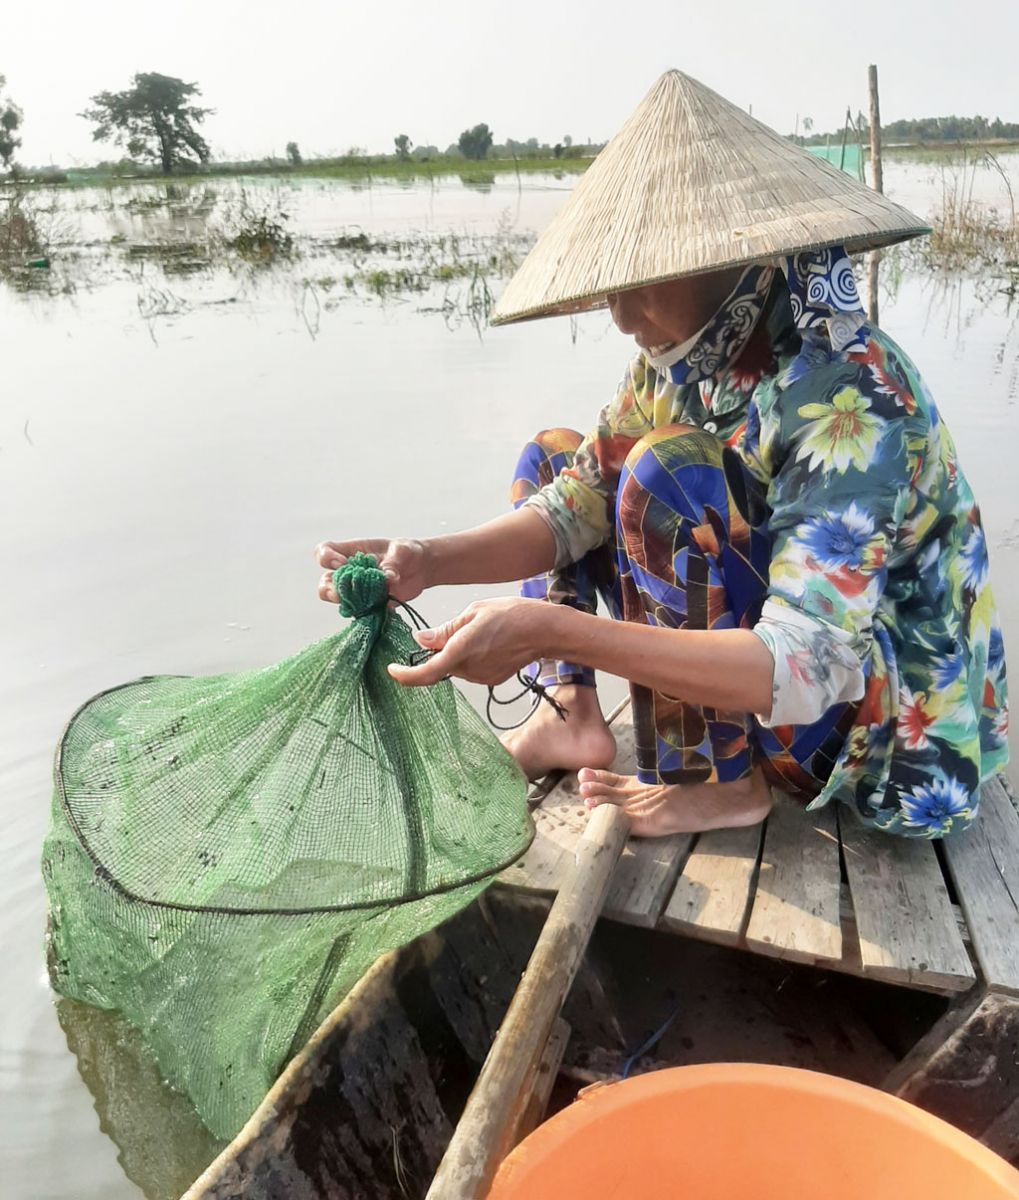 Bà Huỳnh Thị Nghỉ nói: “Lũ nhỏ, cá, tôm ít, nhiều người sống bằng nghề câu lưới mấy chục năm cũng đành phải bỏ nghề, kiếm nghề khác mà sống”